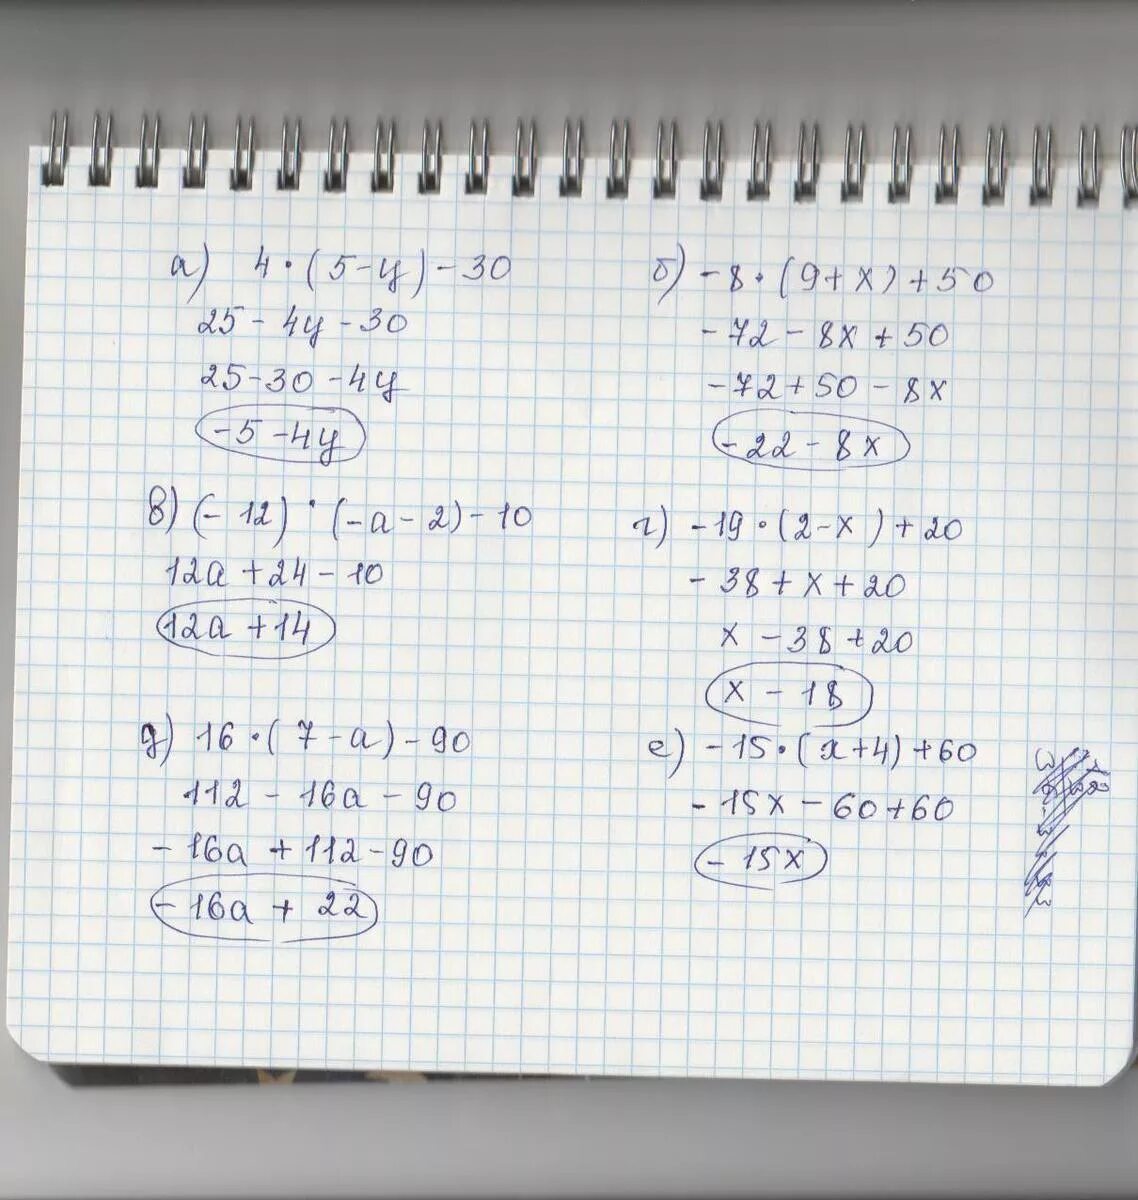 50 5 5 06. 20-3(Х-5)<16-7х. 5/4-Х+5/Х=10/5. Решение 5х+12=60. 4нвк 60-12-19.